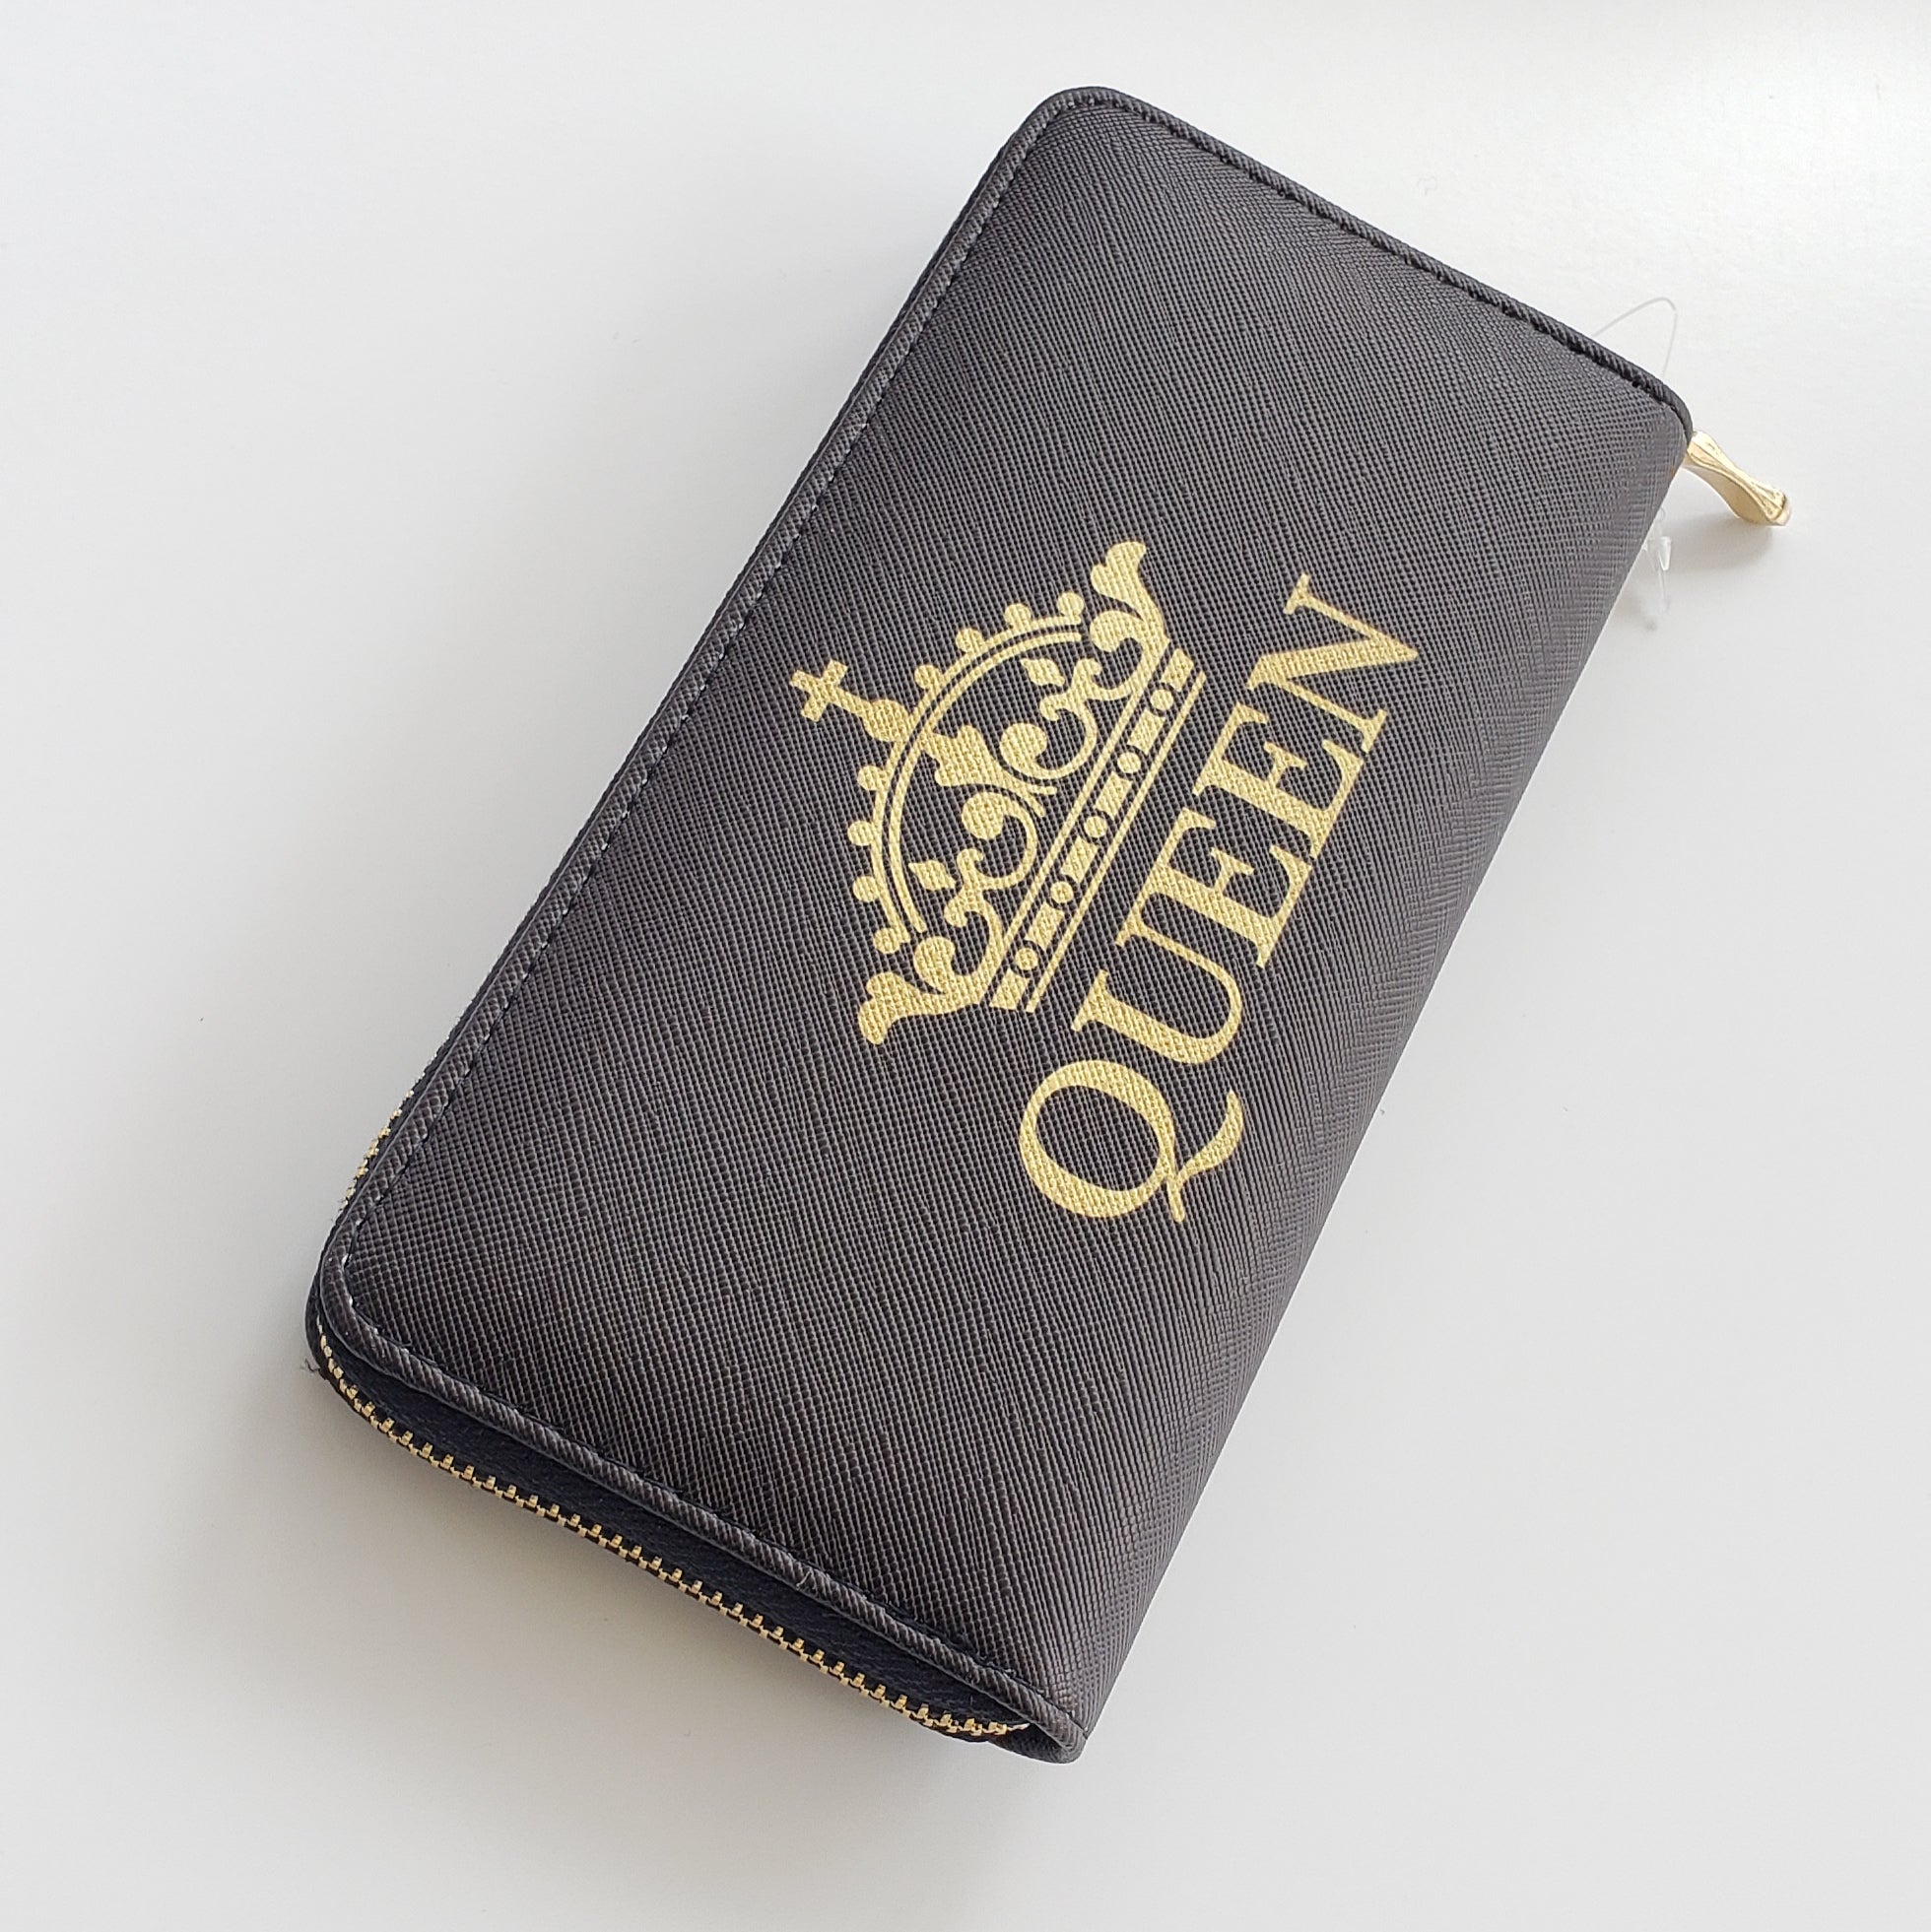 Queen Wallet